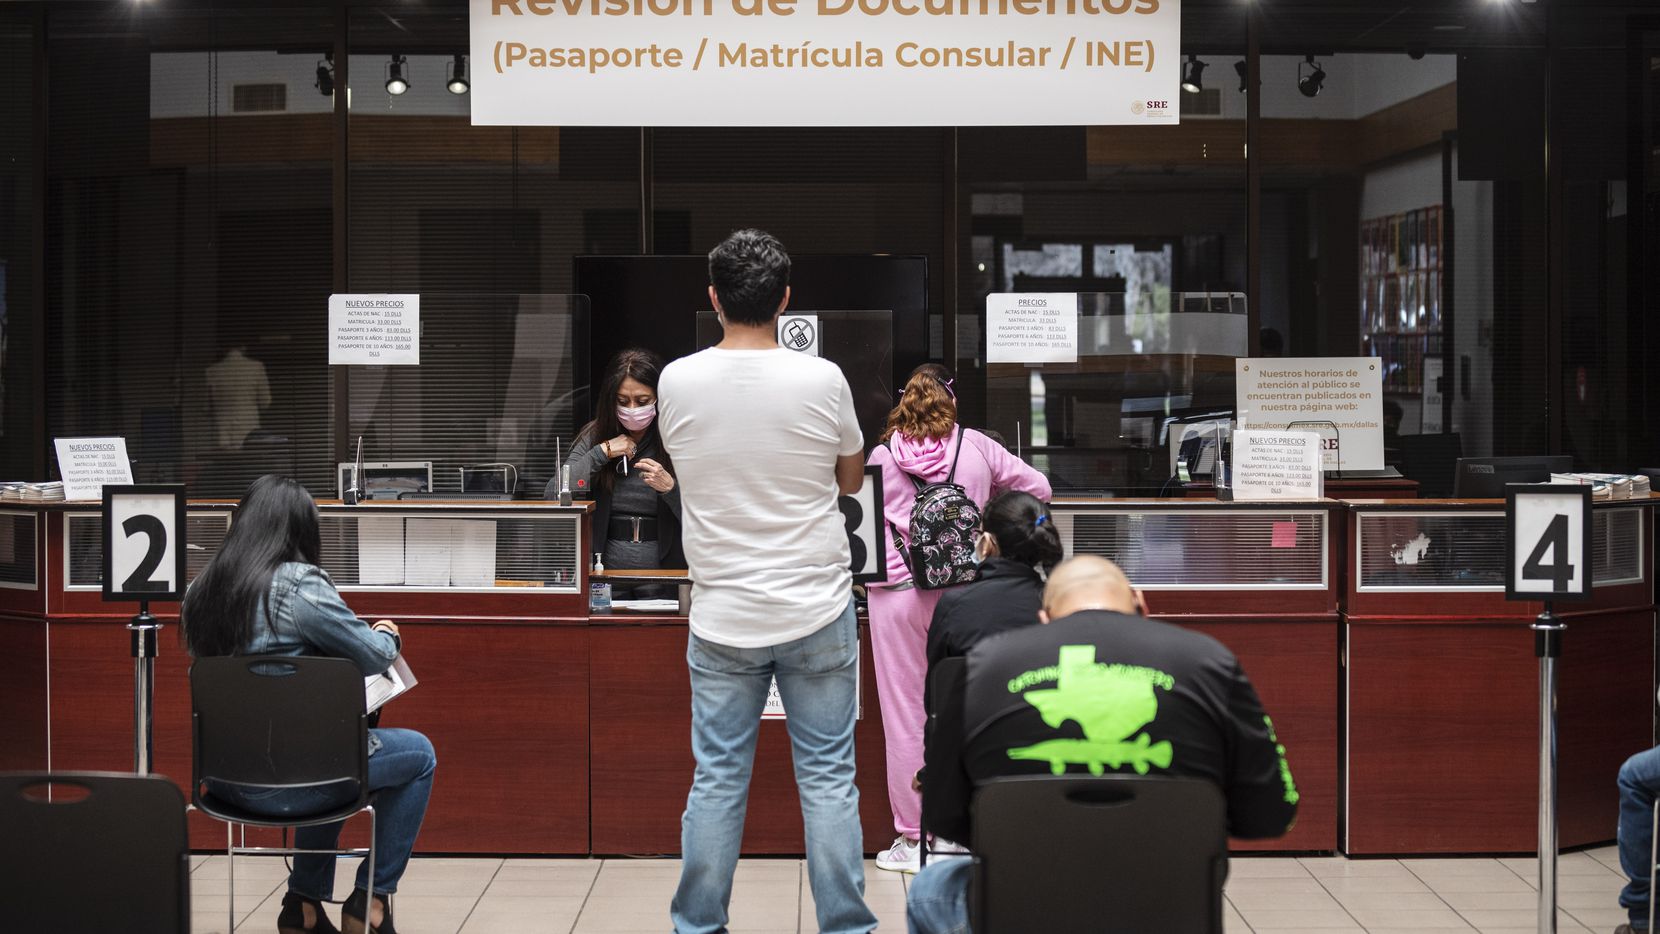 La demanda por pasaportes en el Consulado de México en Dallas es permanente y conseguir citas se ha dificultado durante la pandemia.